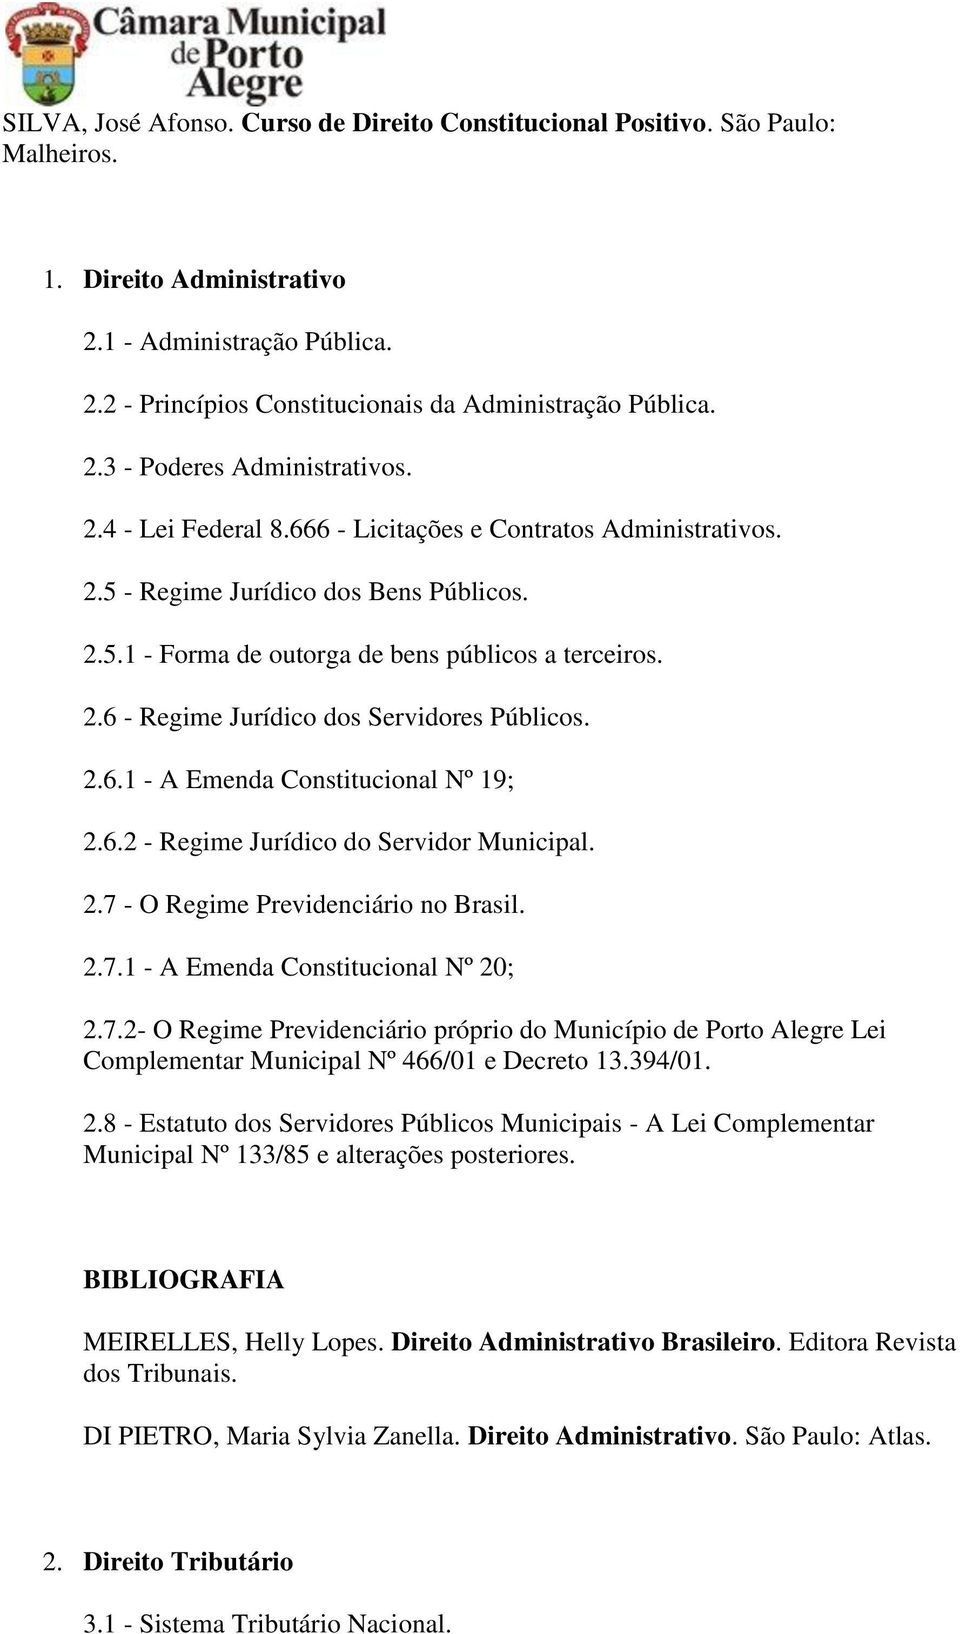 2.6.1 - A Emenda Constitucional Nº 19; 2.6.2 - Regime Jurídico do Servidor Municipal. 2.7 